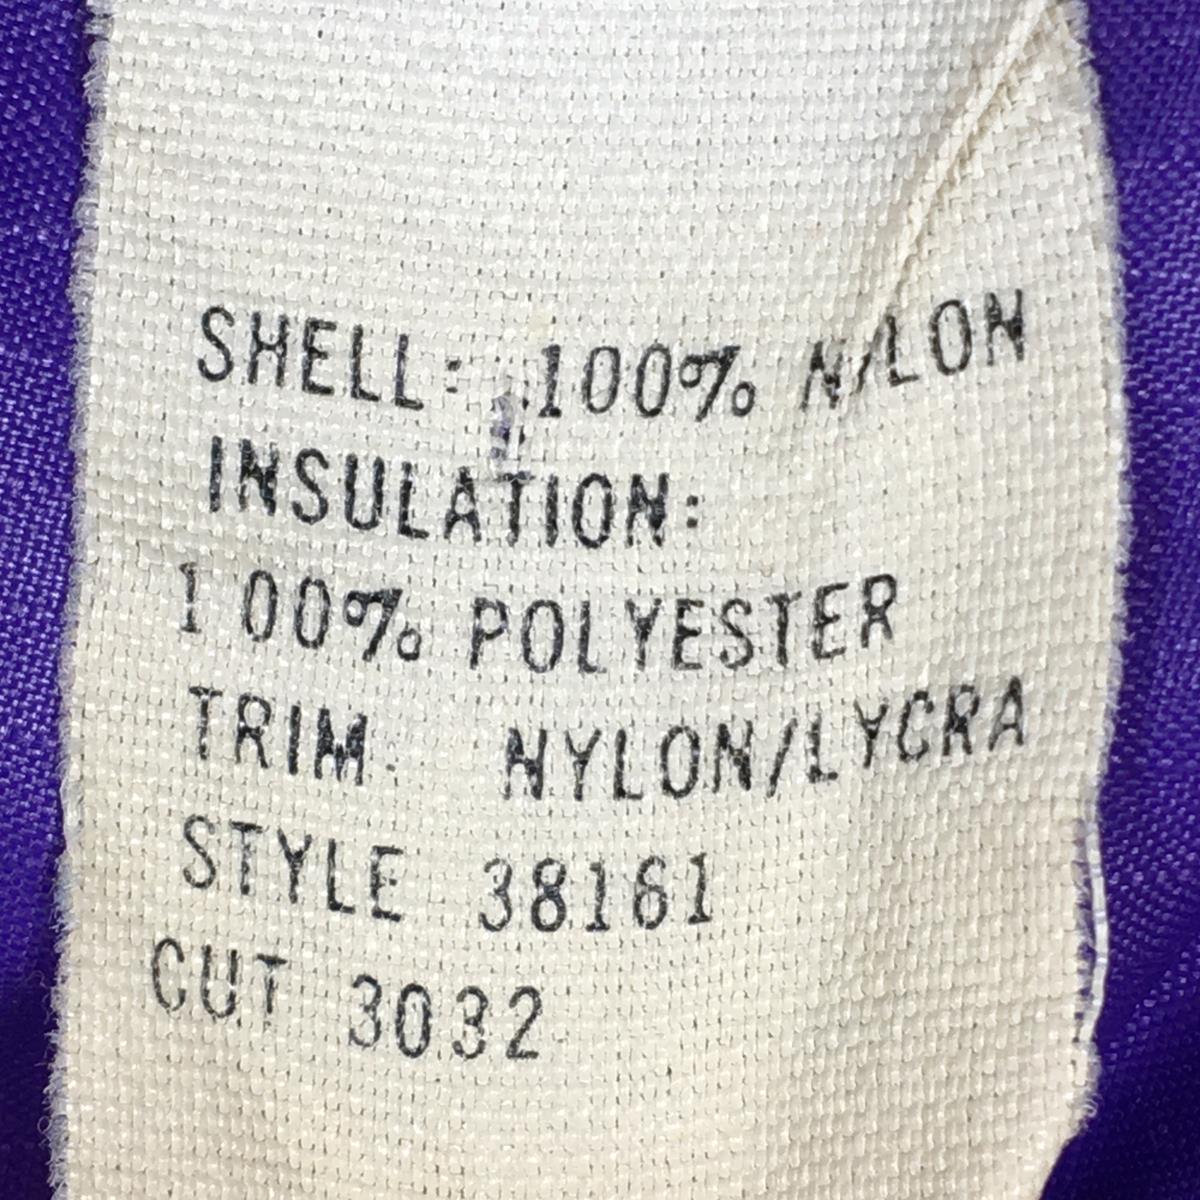 【MEN's M】 パタゴニア 1990s インサレーション ベスト Insulation Vest コバルト×エッグプラント ビンテージ 入手困難 カタログ非掲載モデル PATAGONIA 38161 Cobalt / Eggplant ブルー系